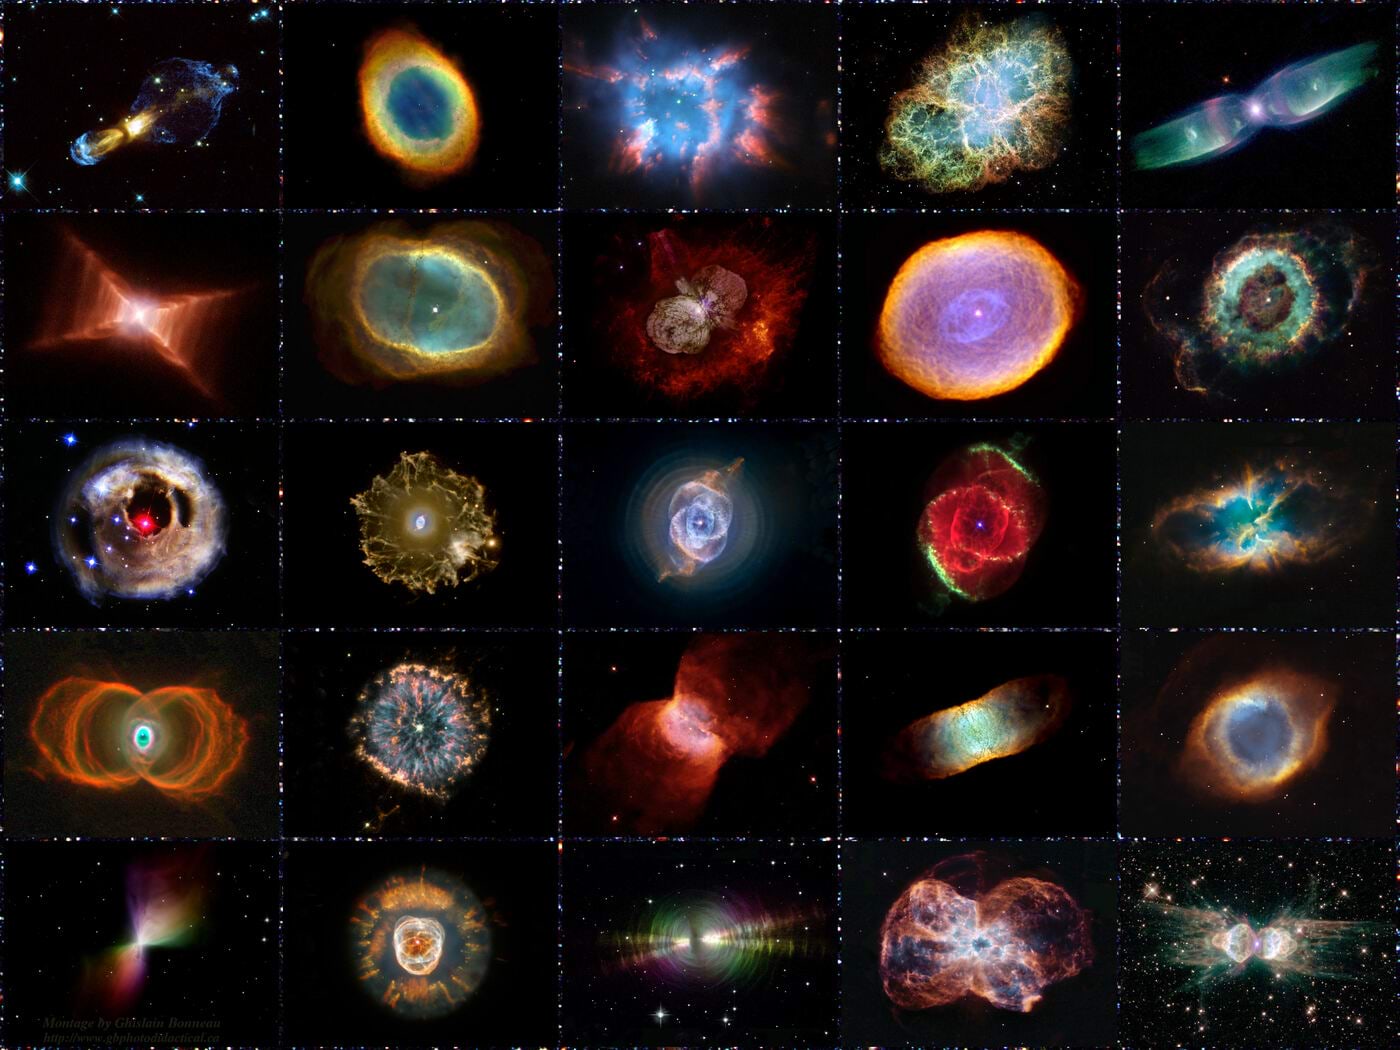 Näiteid Hubble'i kosmoseteleskoobi pildistatud planetaarududest